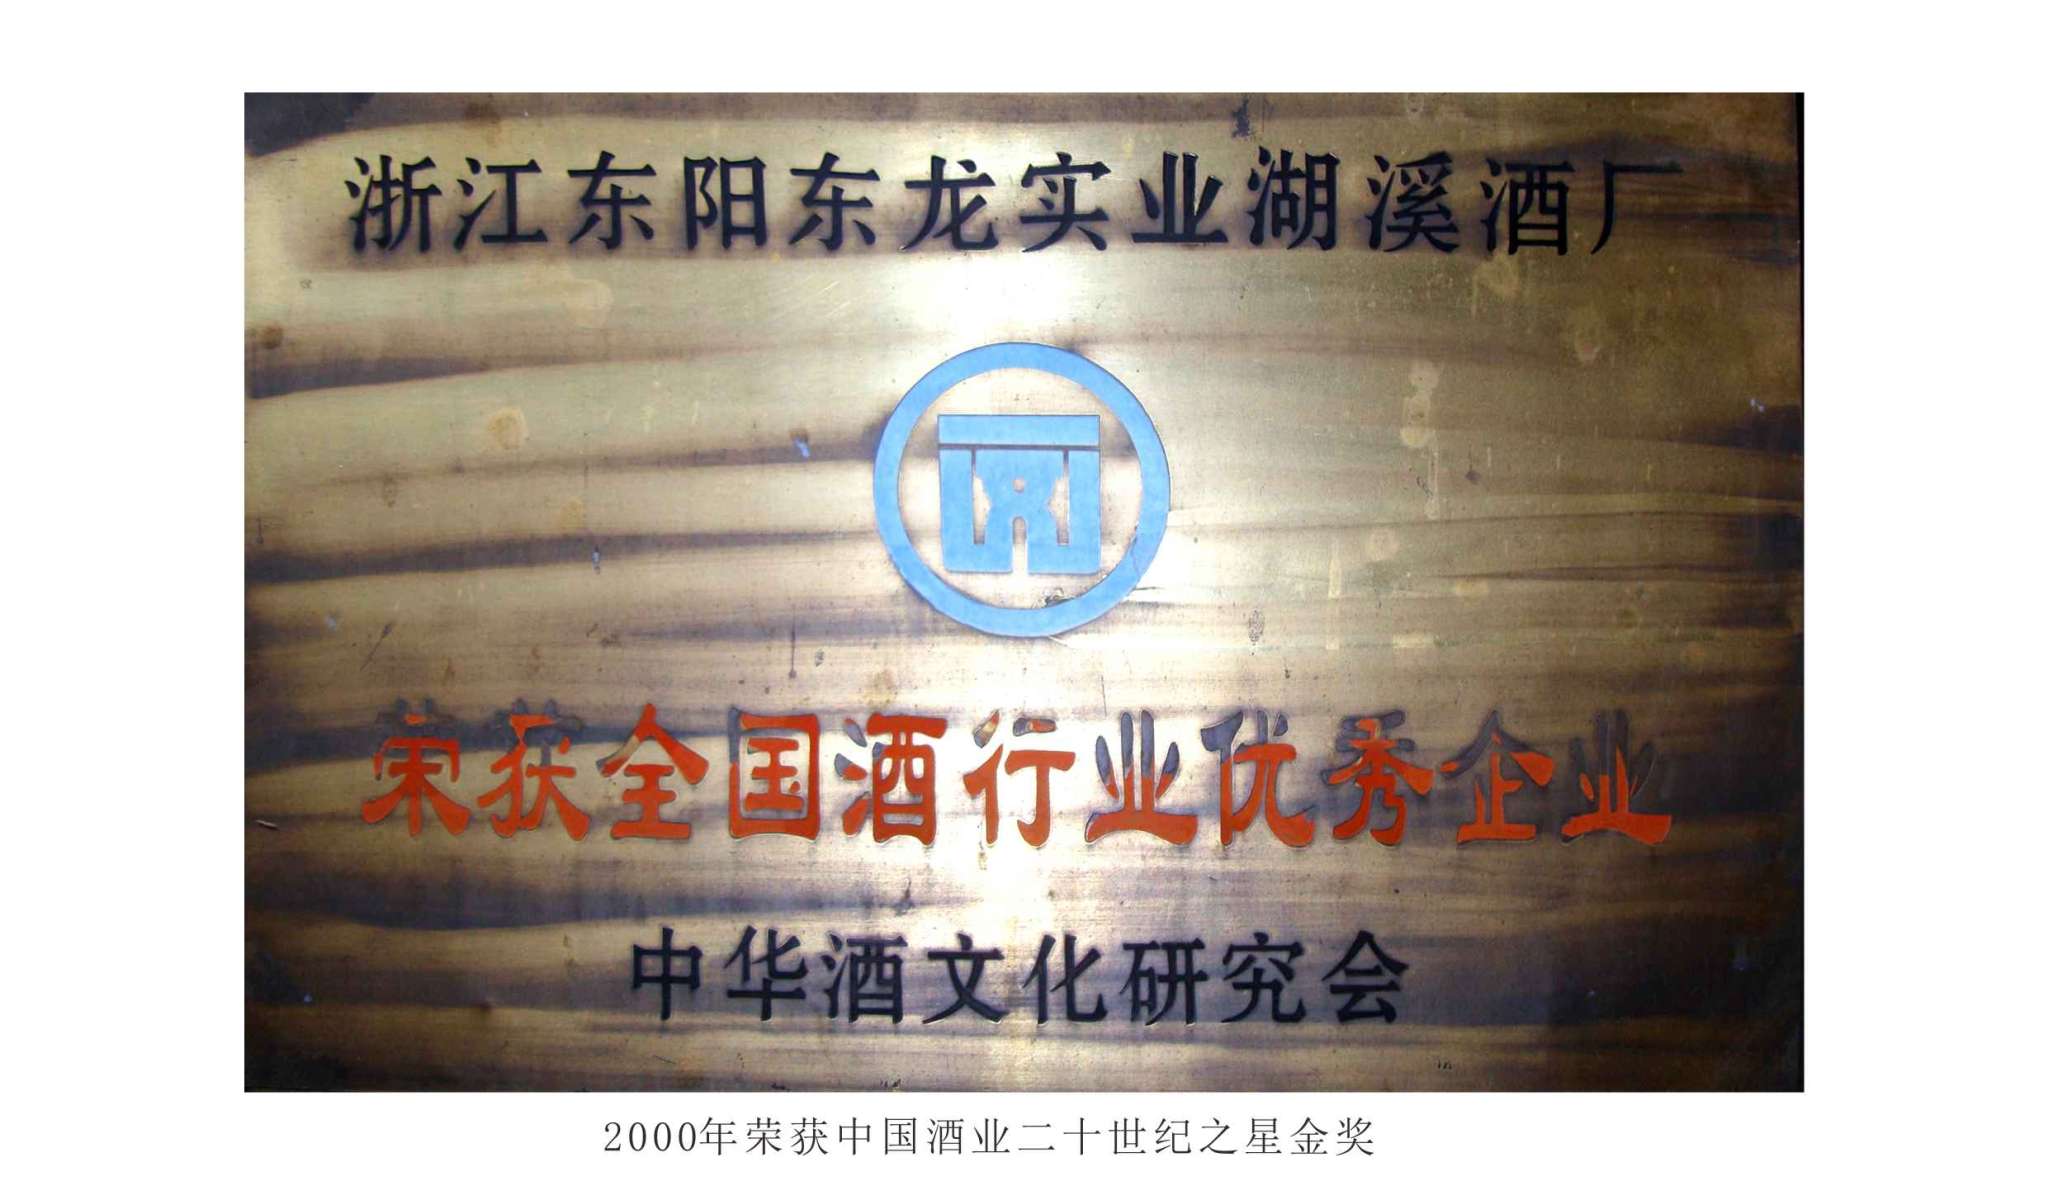 2000年  榮獲中國酒業二十世紀之星金獎